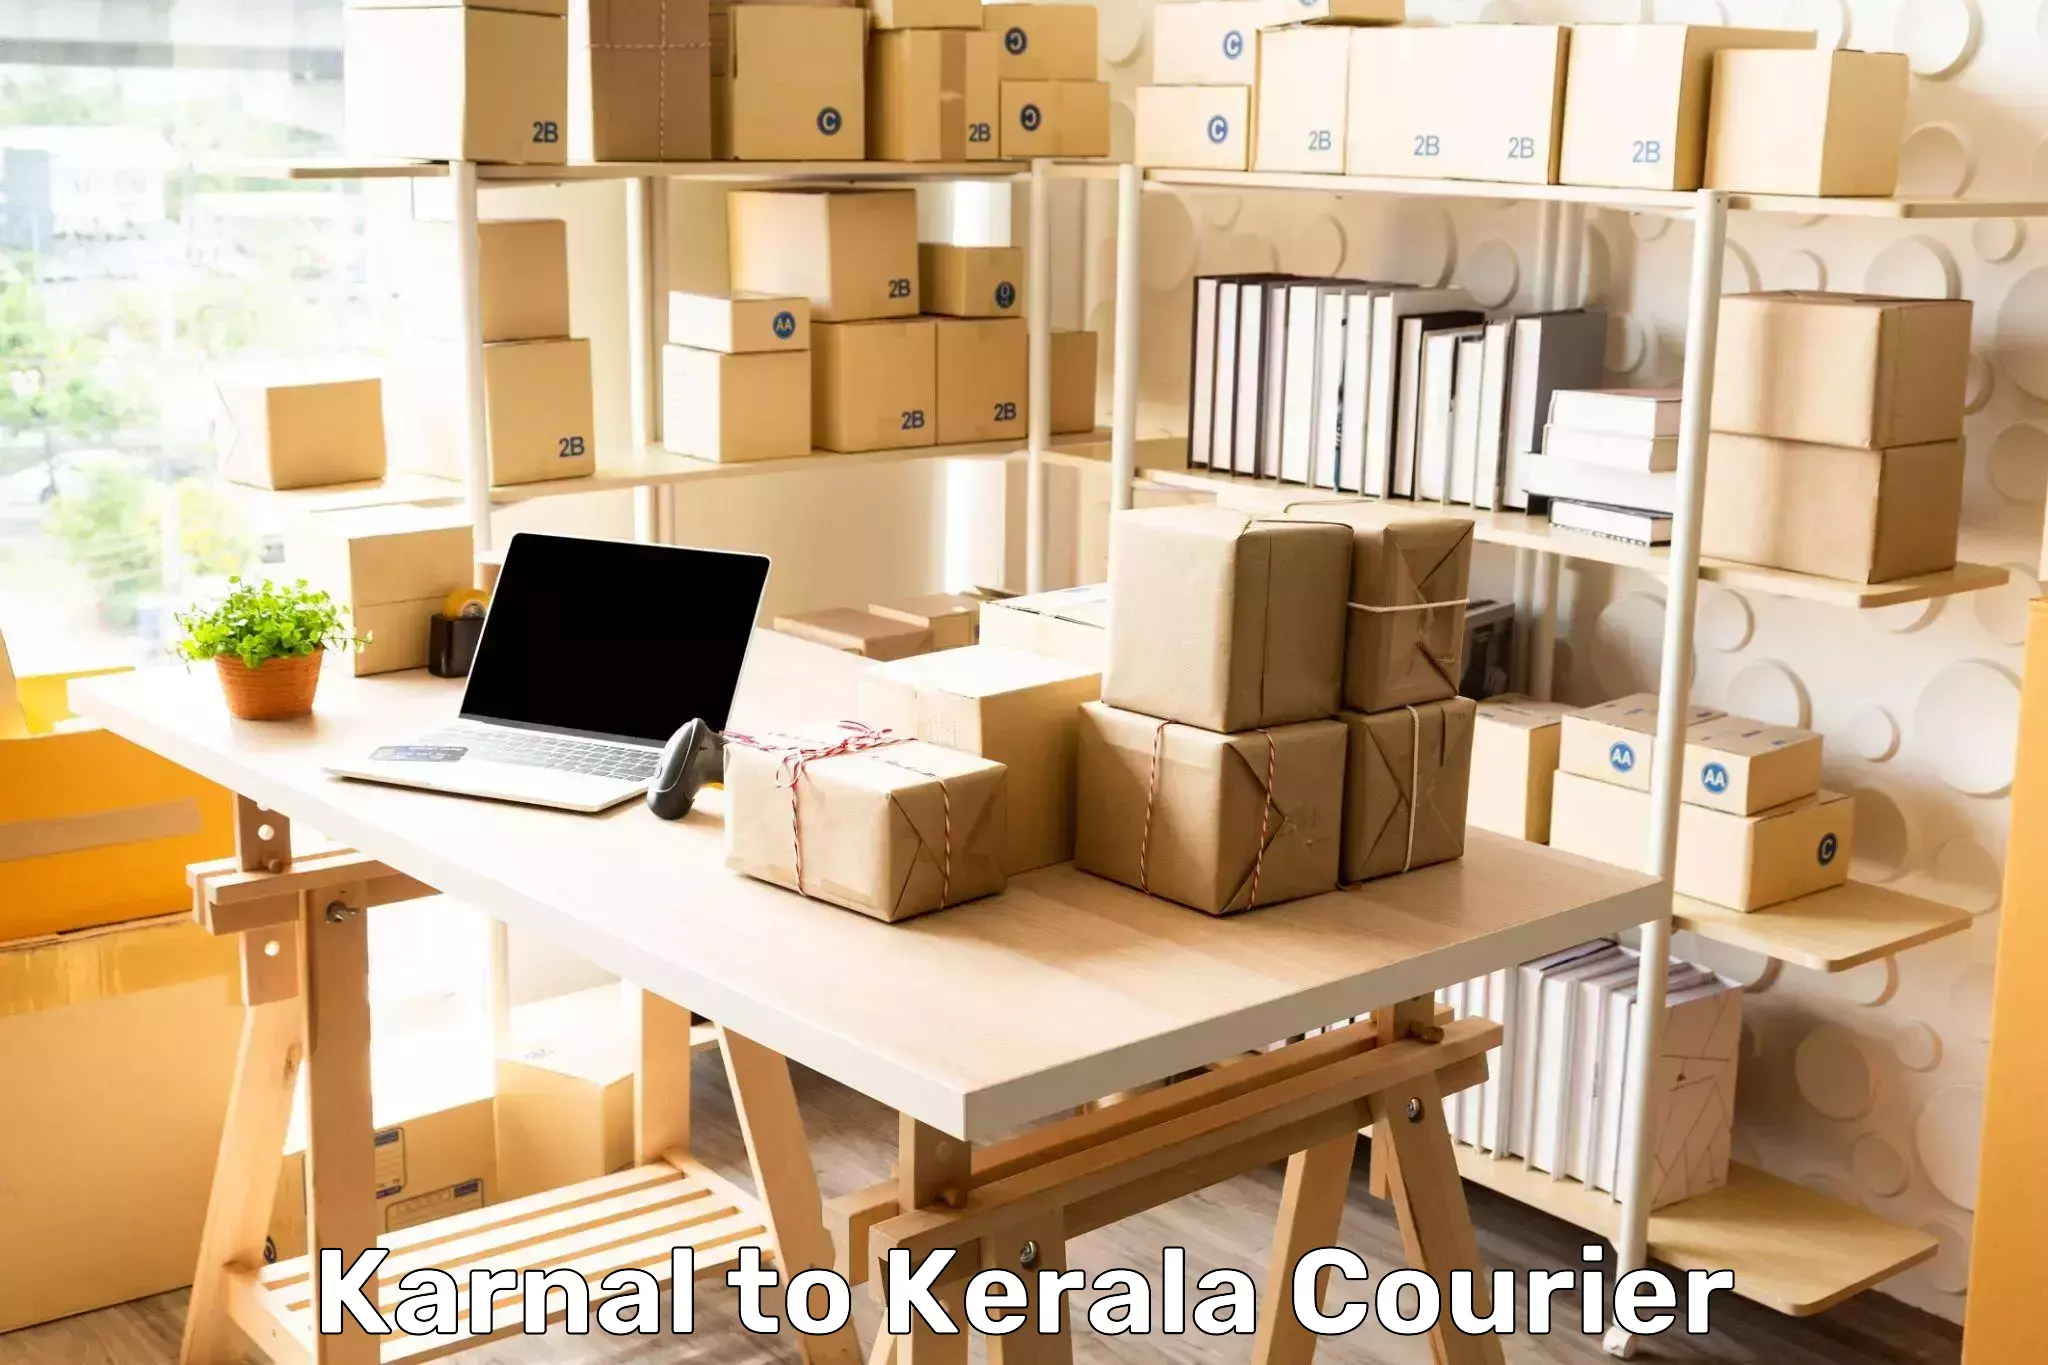 Customer-centric shipping Karnal to Kondotty